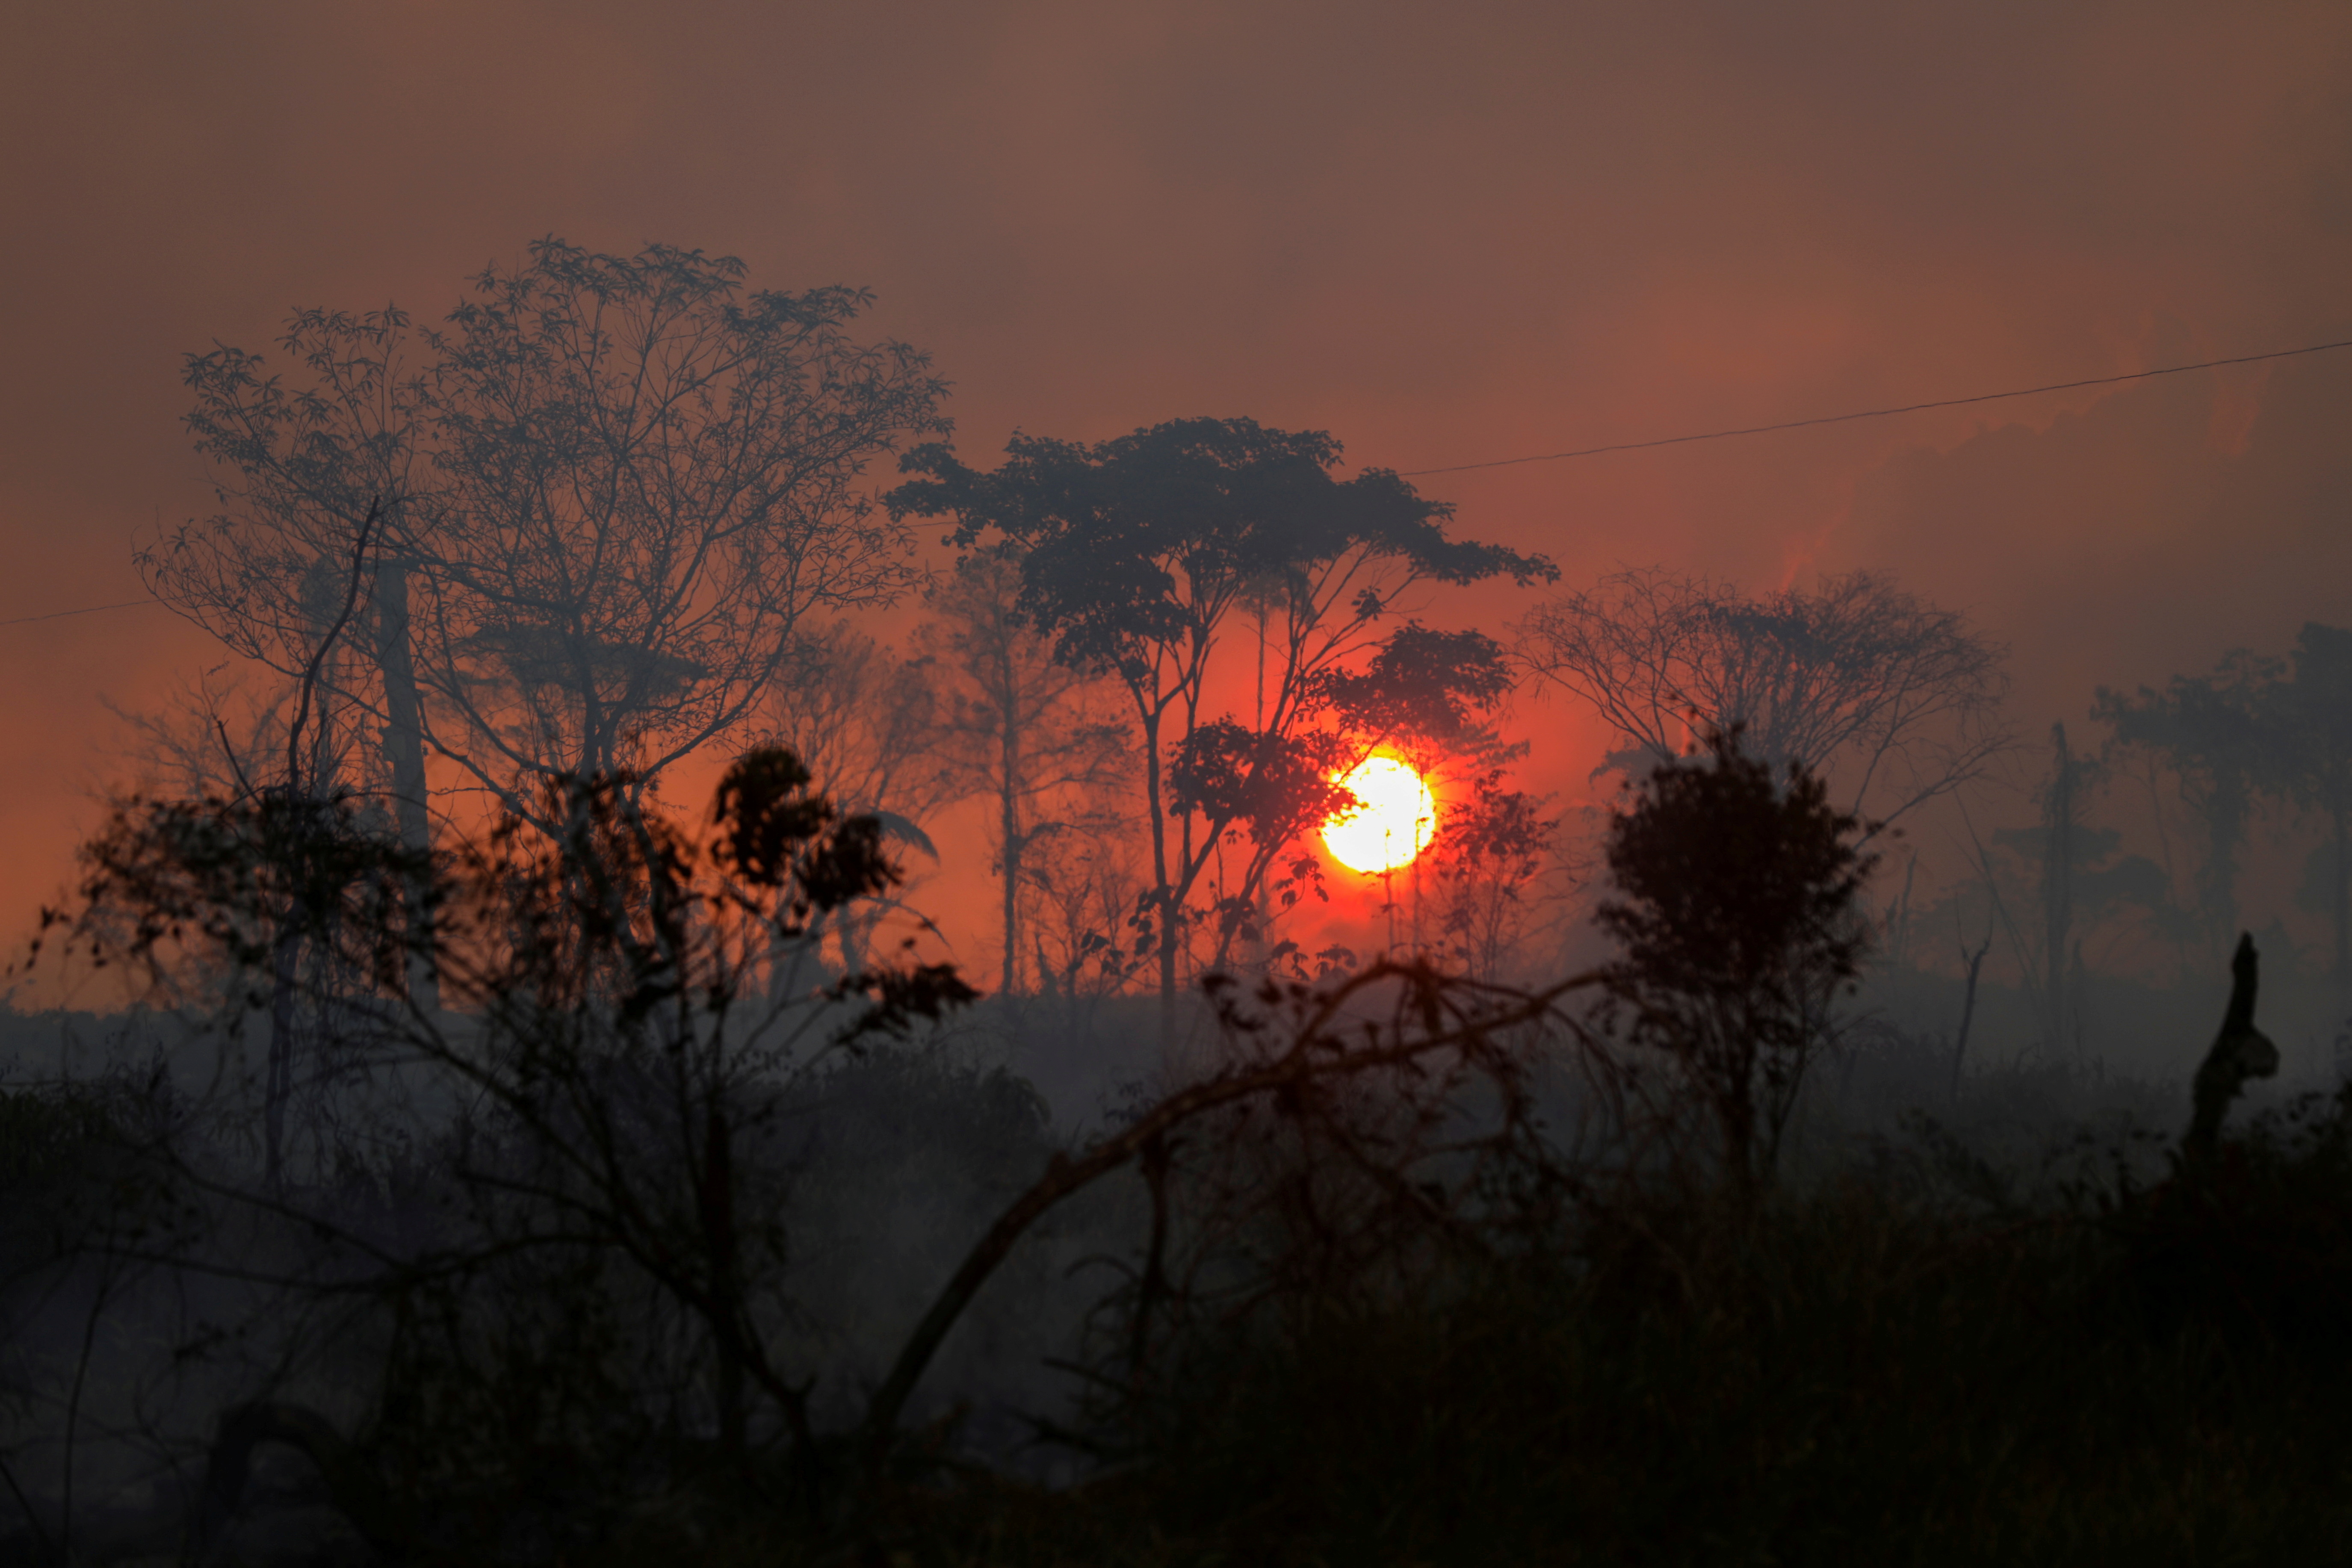 Brazil releases data on Amazon rainforest destruction for August